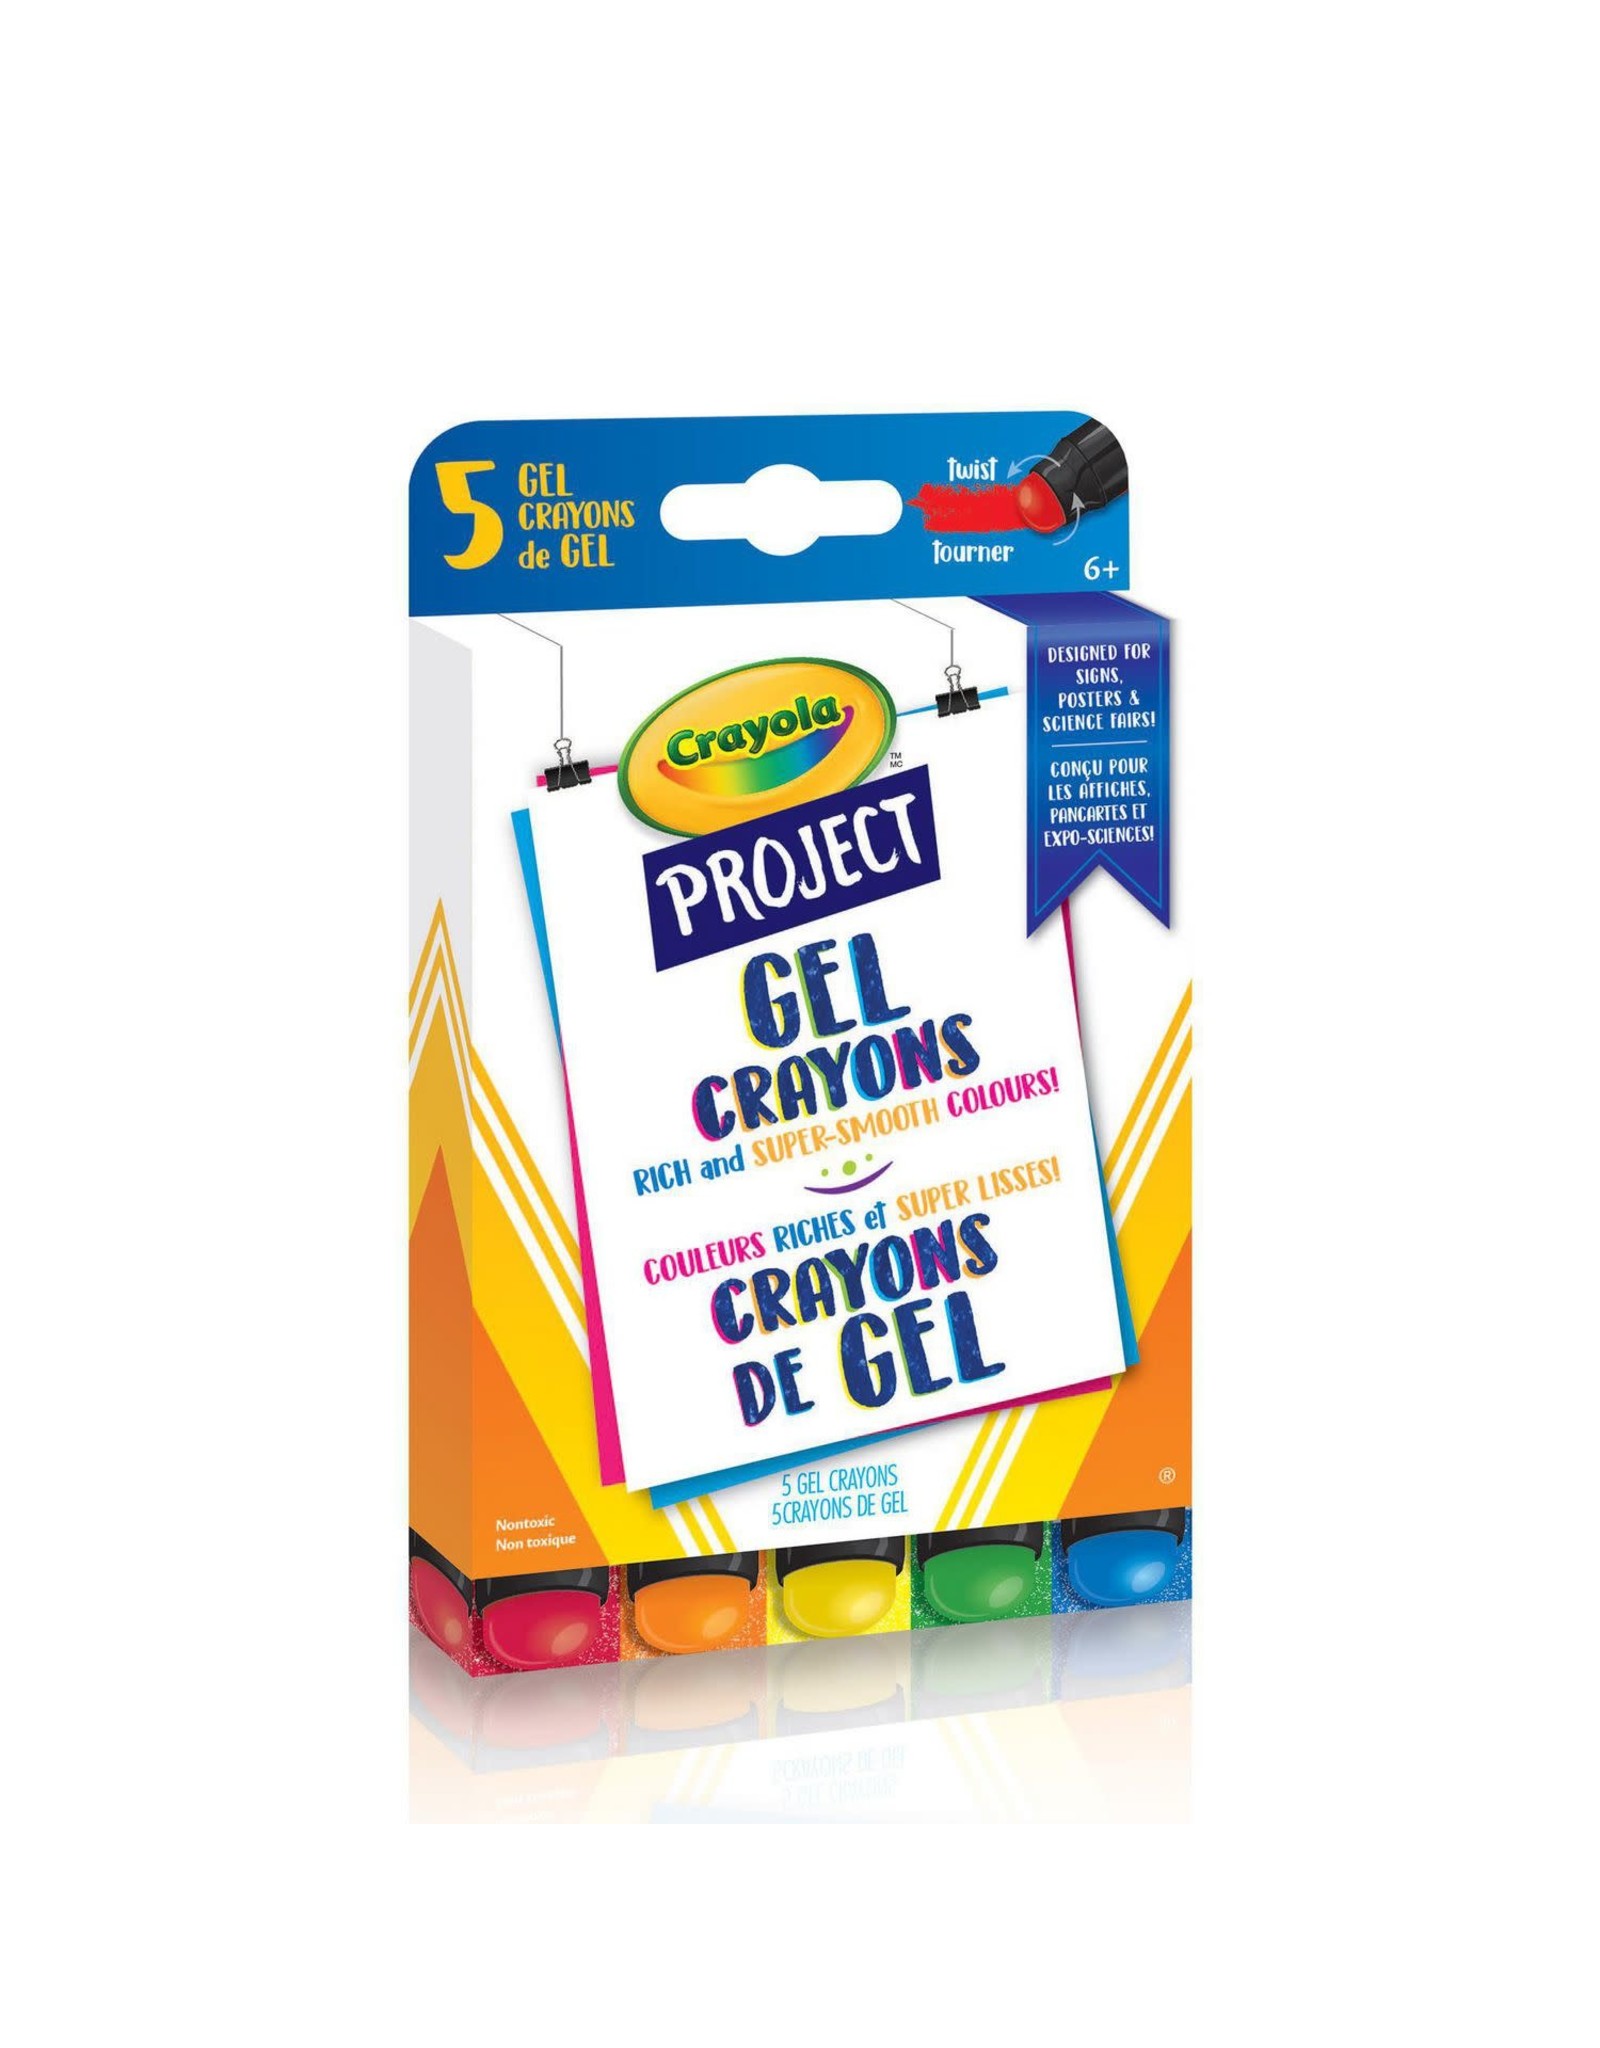 Crayola Crayola Project Gel Crayons, 5 Count